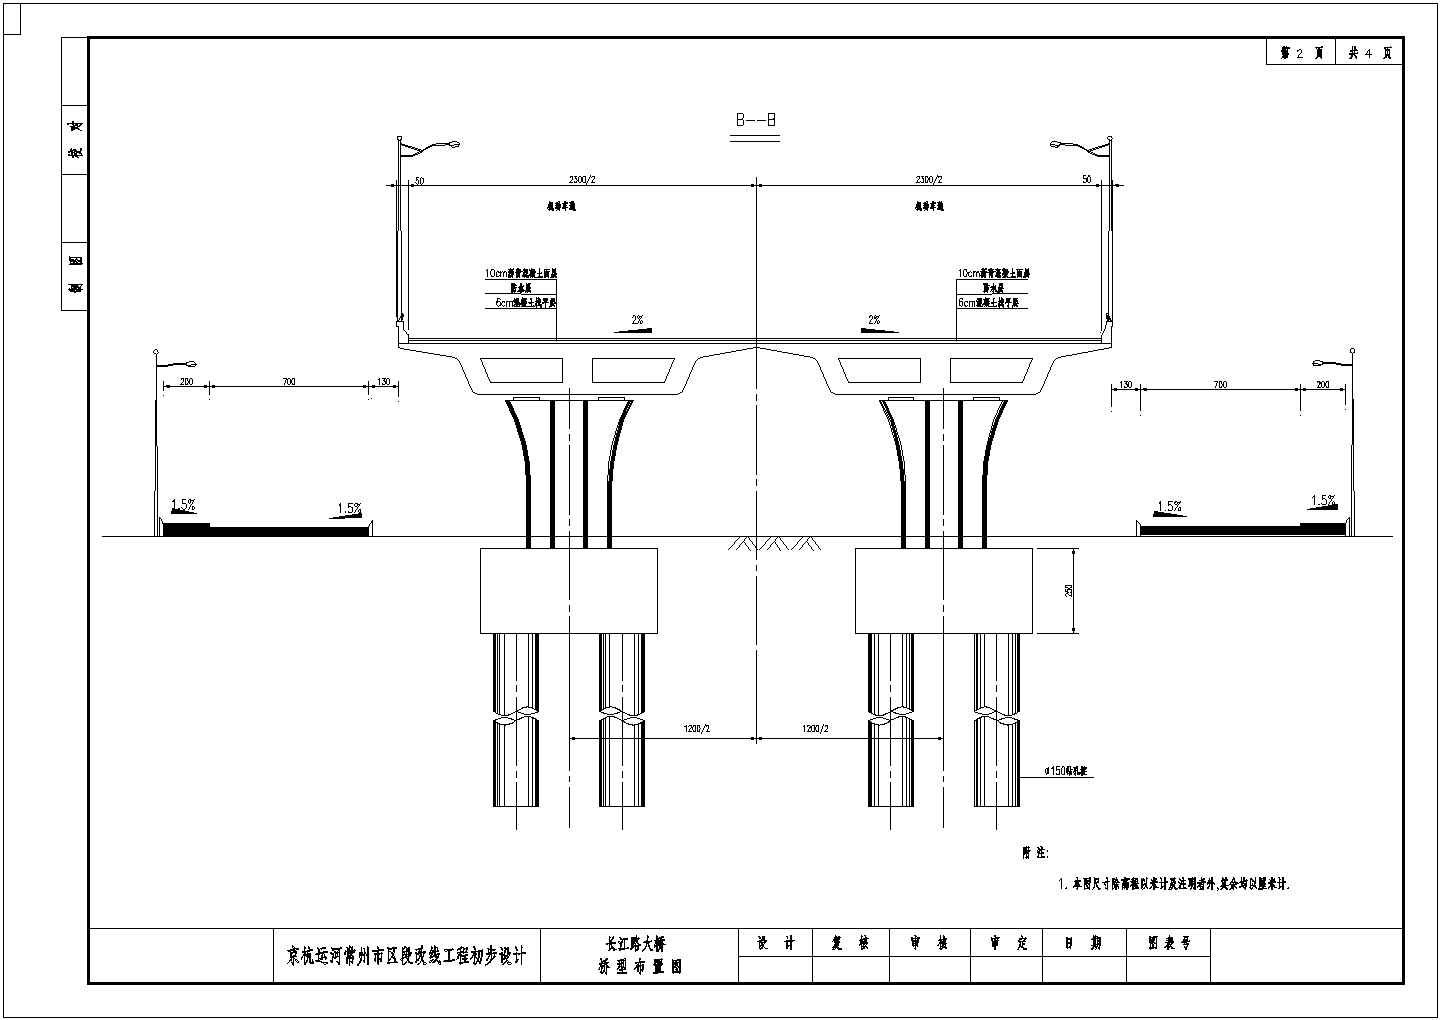 某长江路大桥CAD大样详细施工图全套桁架拱桥桥型布置图